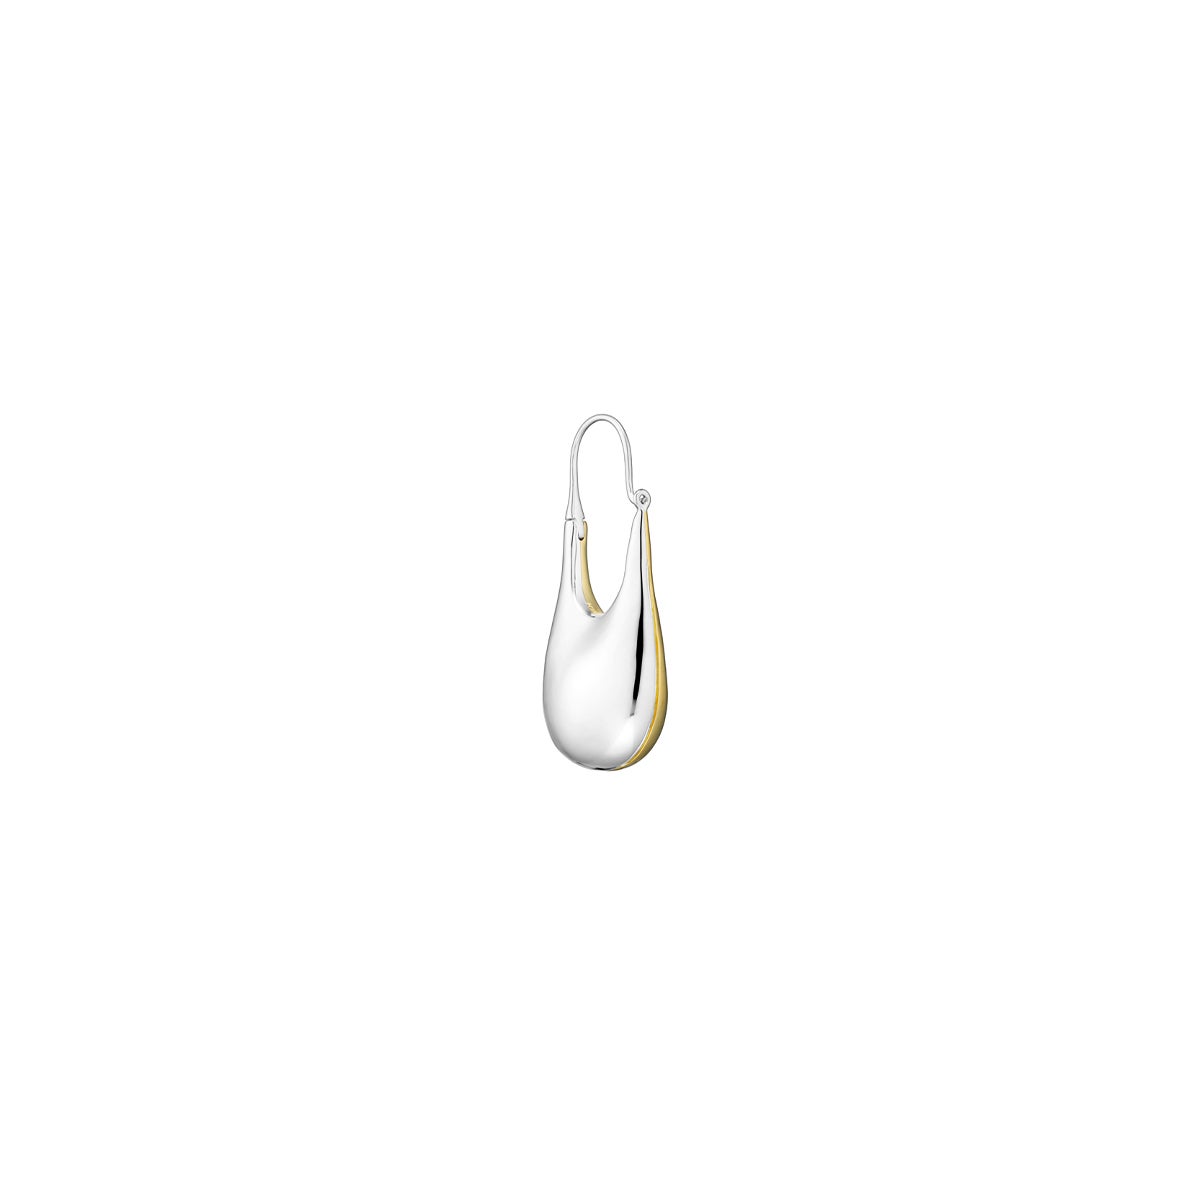 KINRADEN DORIC MEDIUM 'GEMINI' Earring - 18k gold & sterling silver For Sale